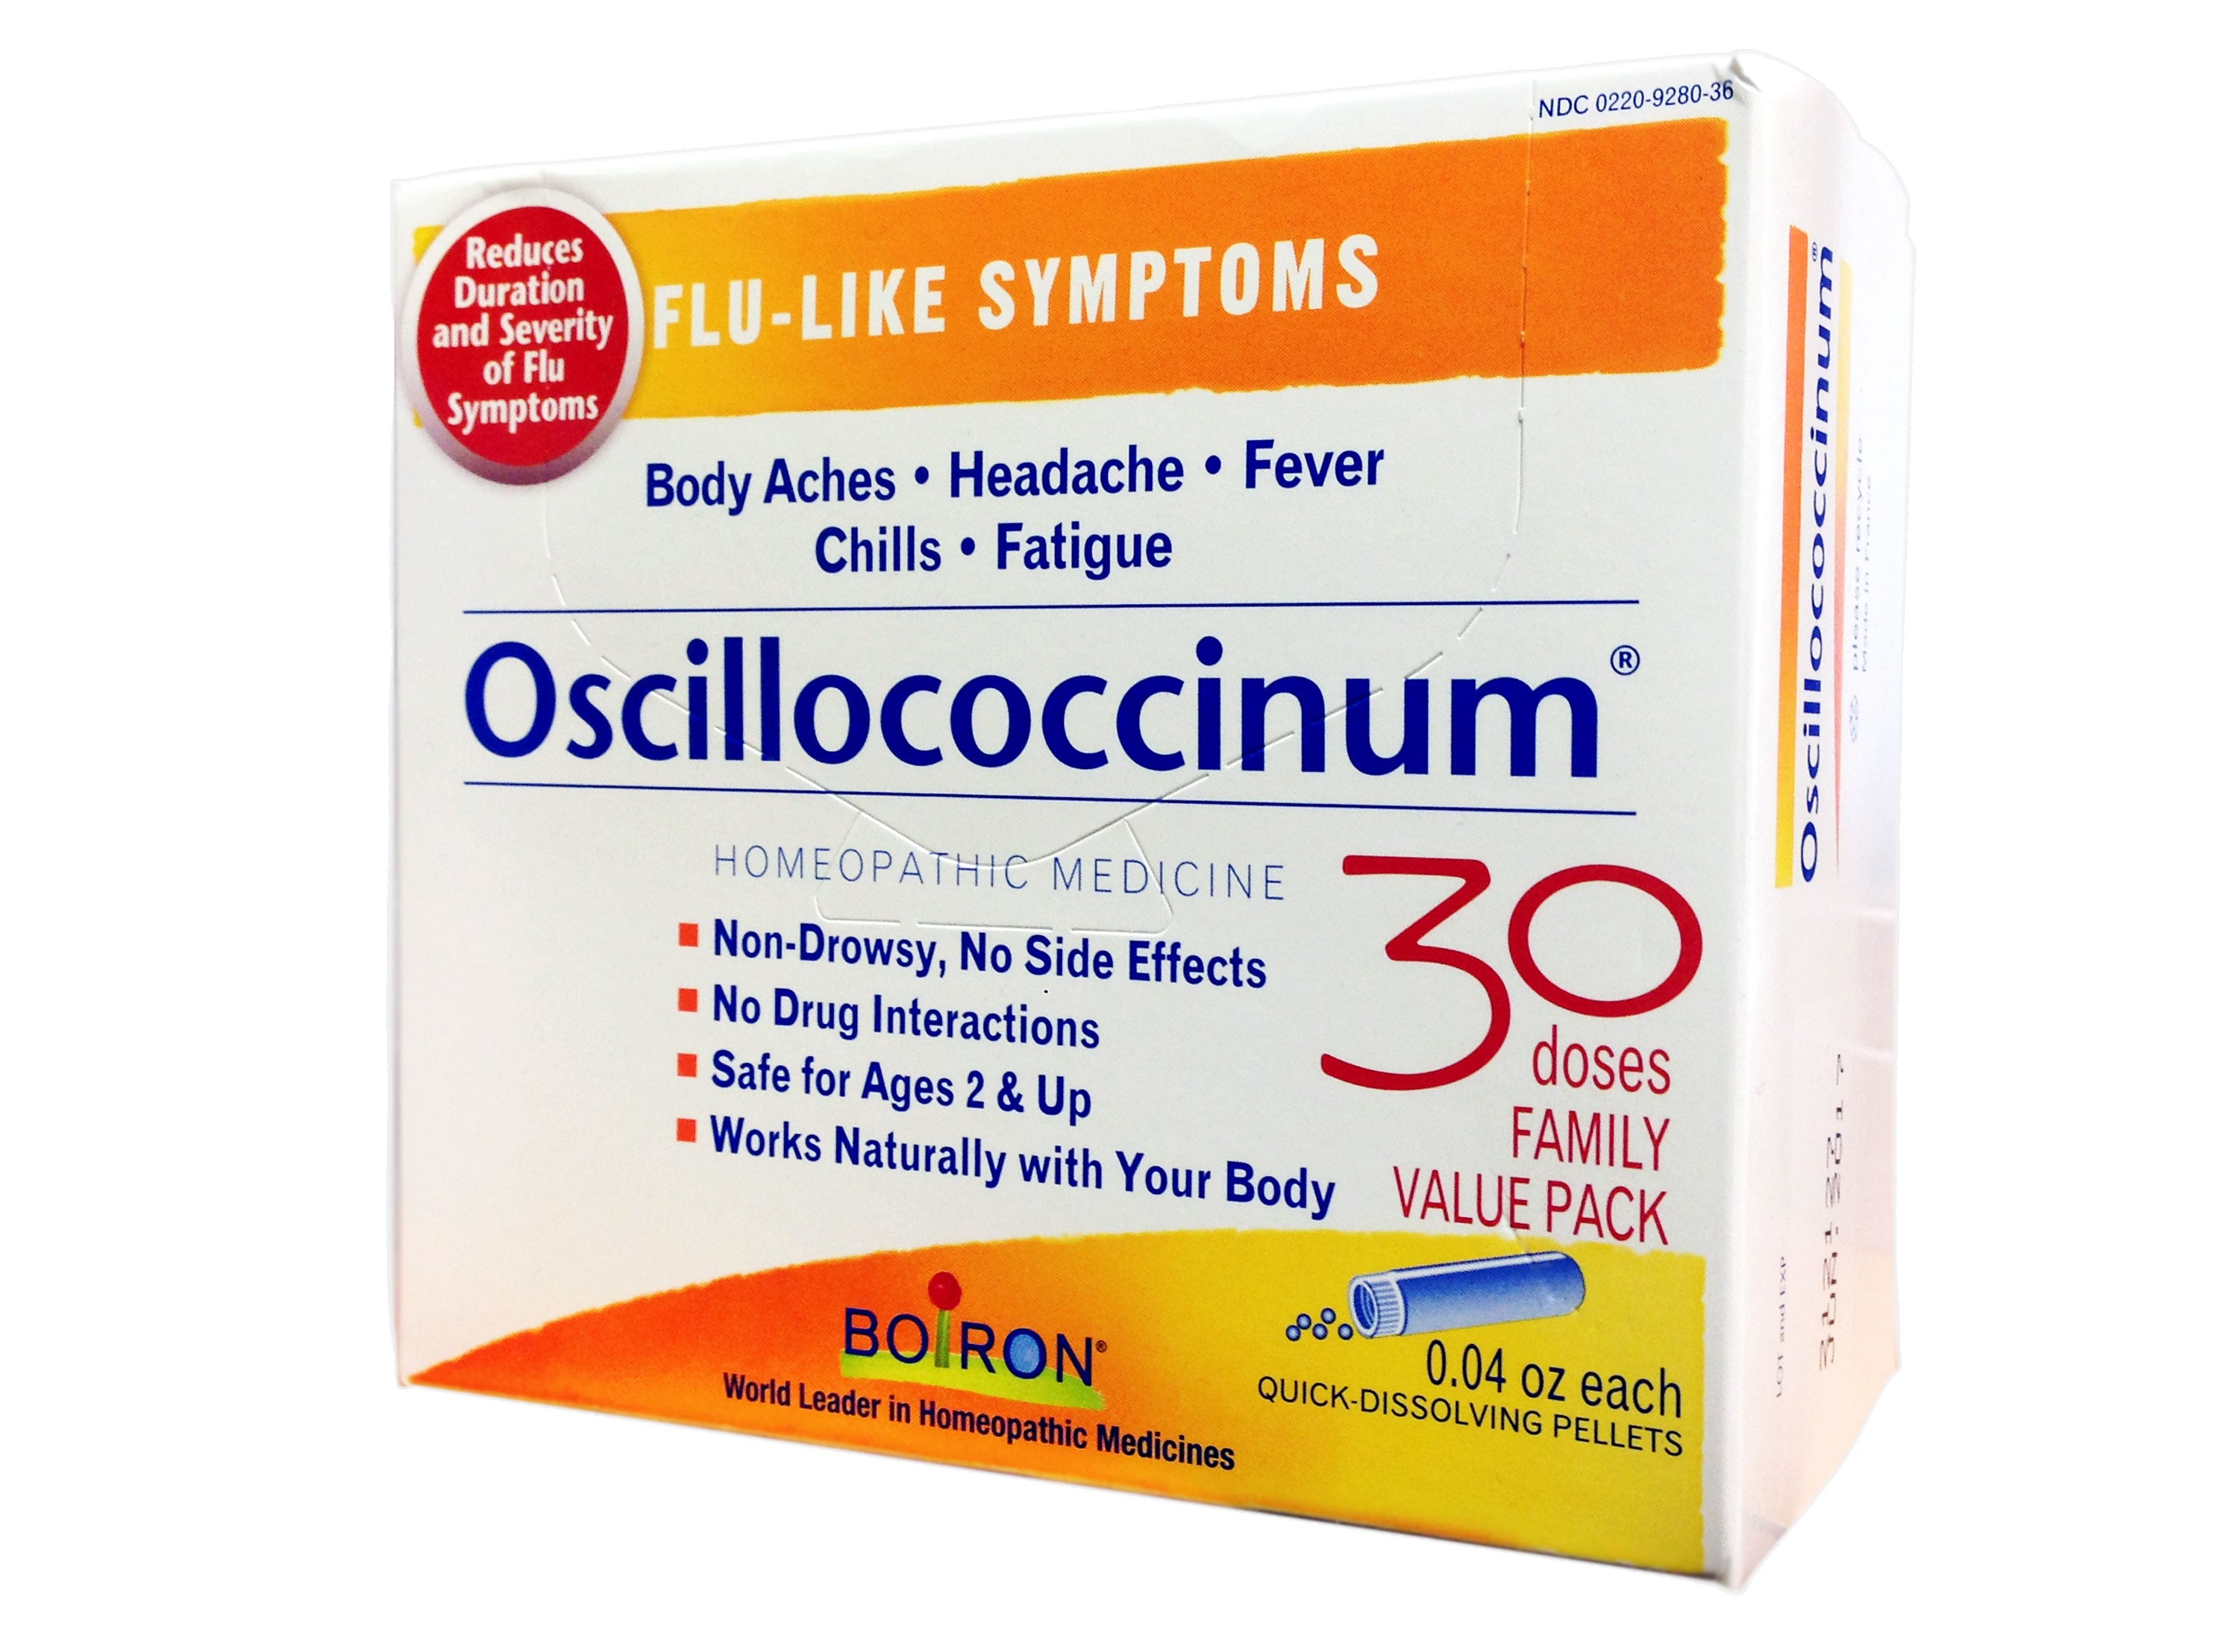 Boiron Oscillococcinum Unit Dose, Homeopathic Medicine For Flu-Like Symptoms, Body Aches, Headache, Fever, Chills, Fatigue, 30 Doses